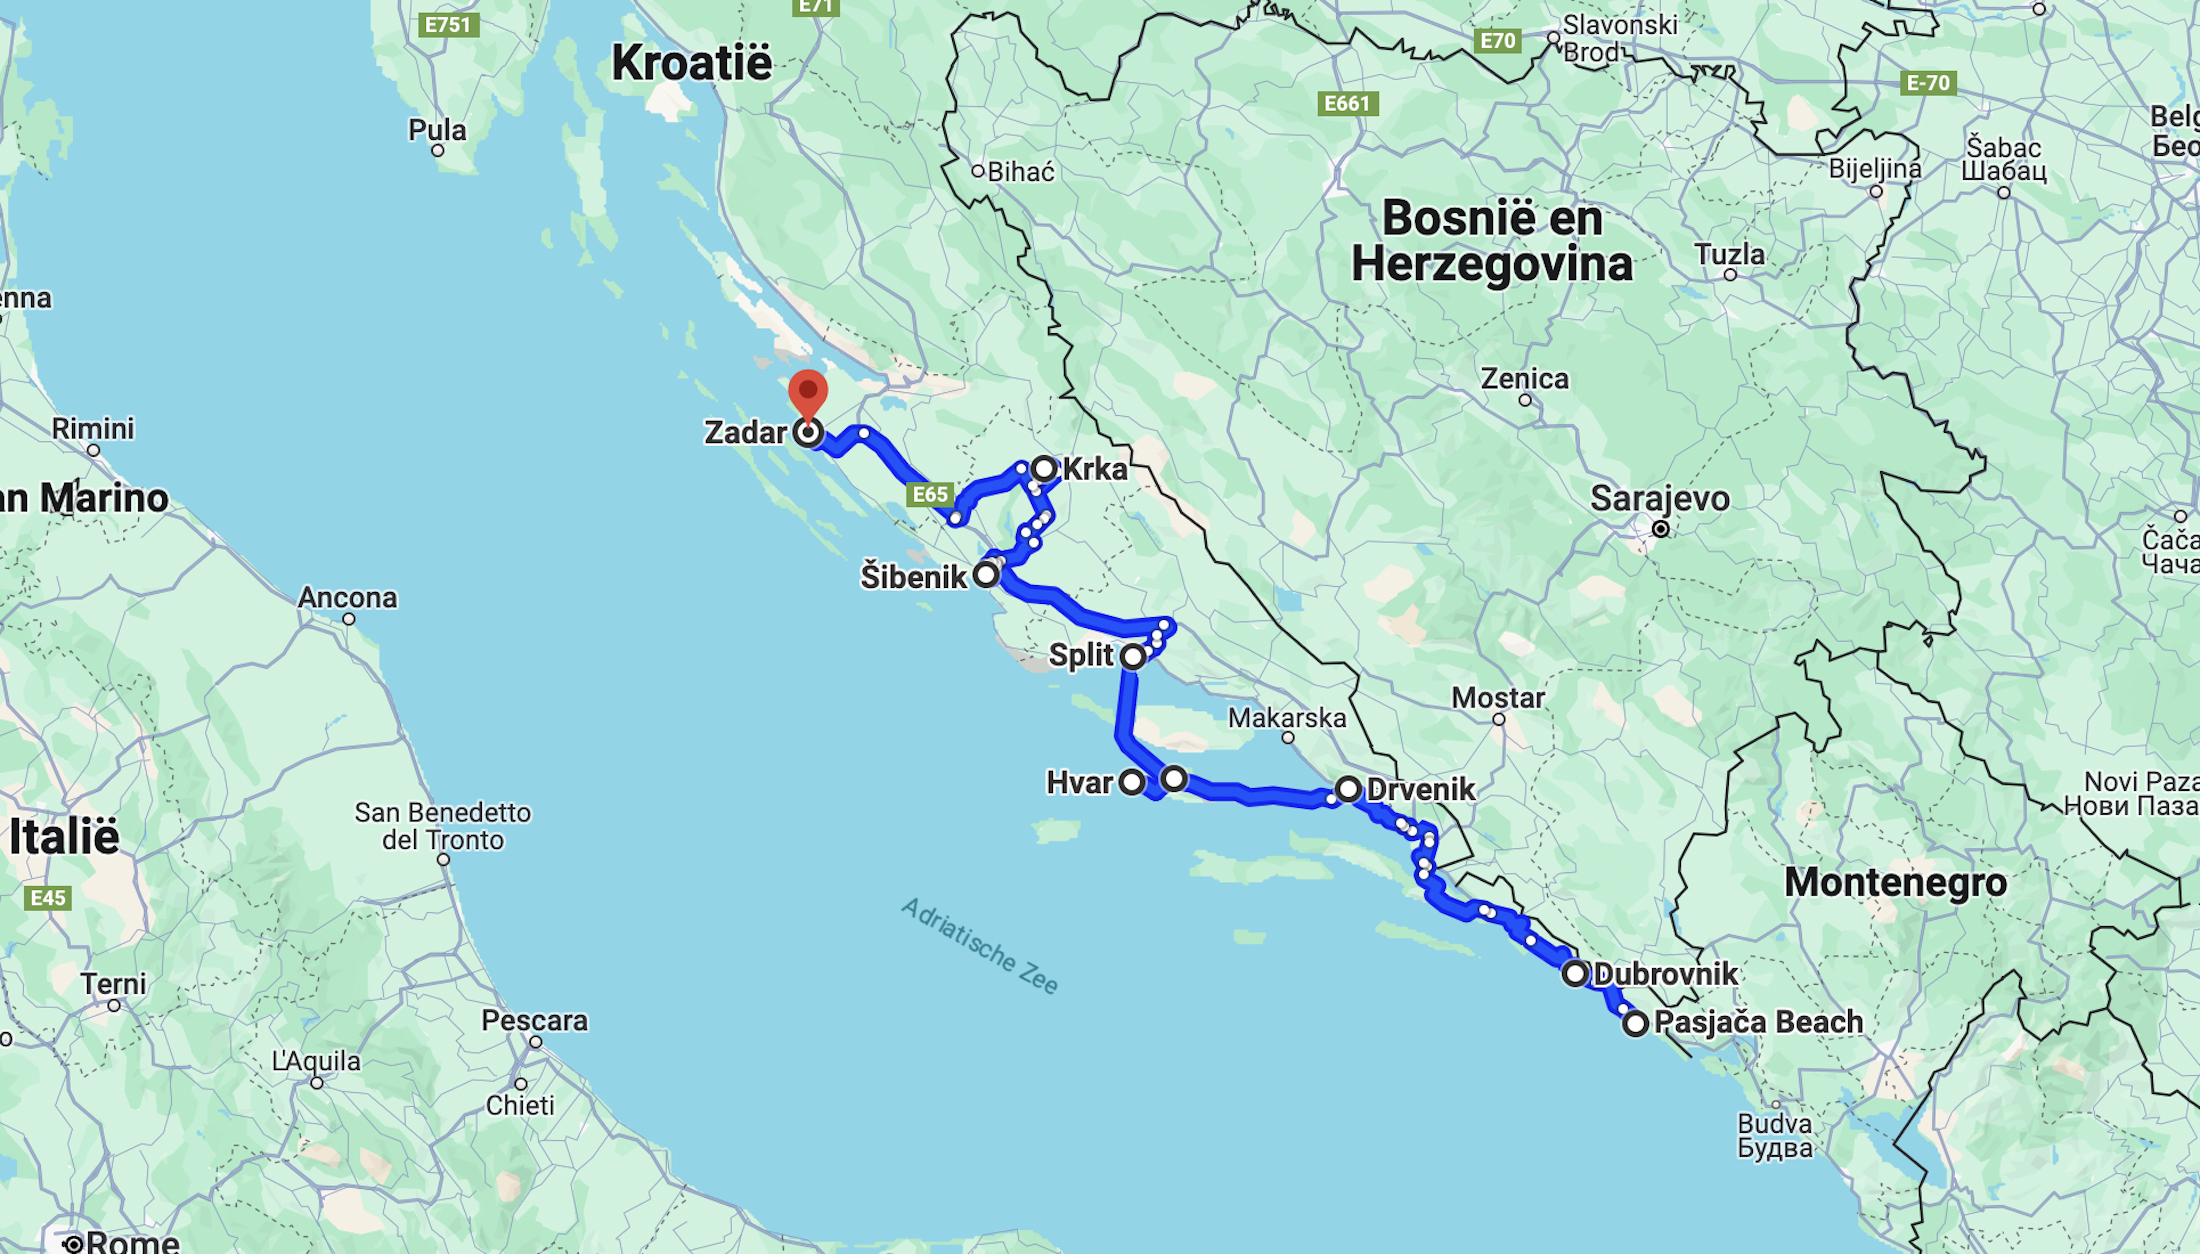 De mooiste route om te rijden: volg de kust van Dubrovnik naar Zadar